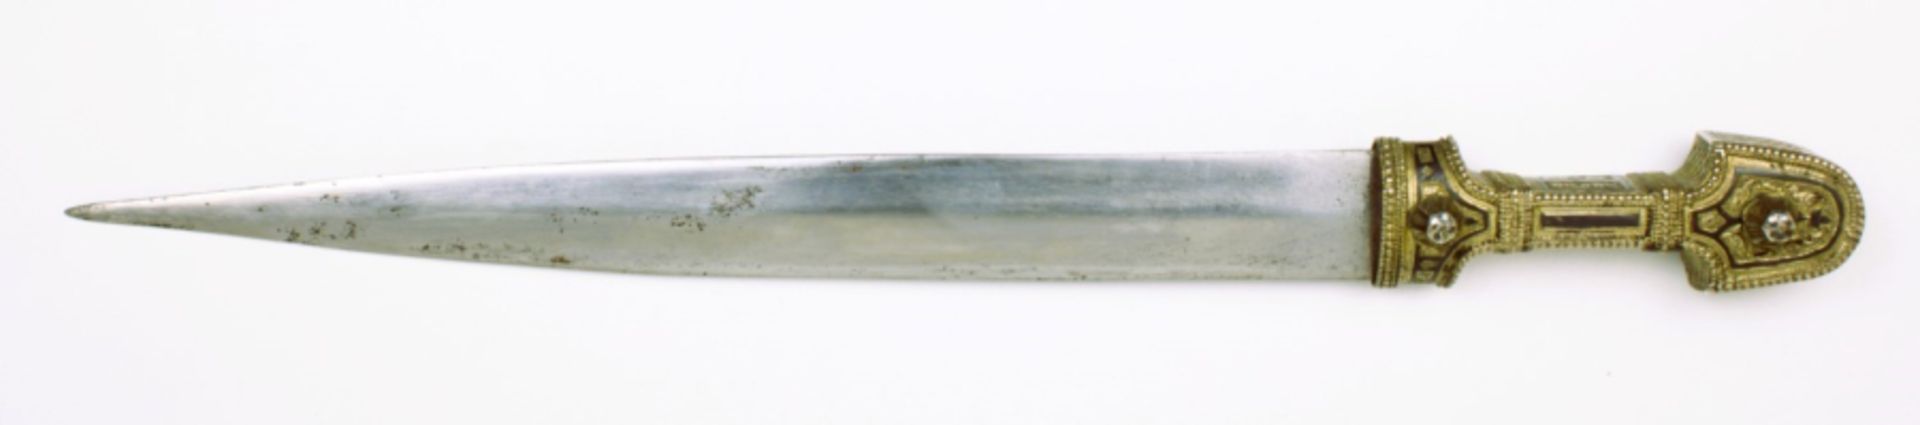 Silver Kindjal dagger - Image 5 of 8